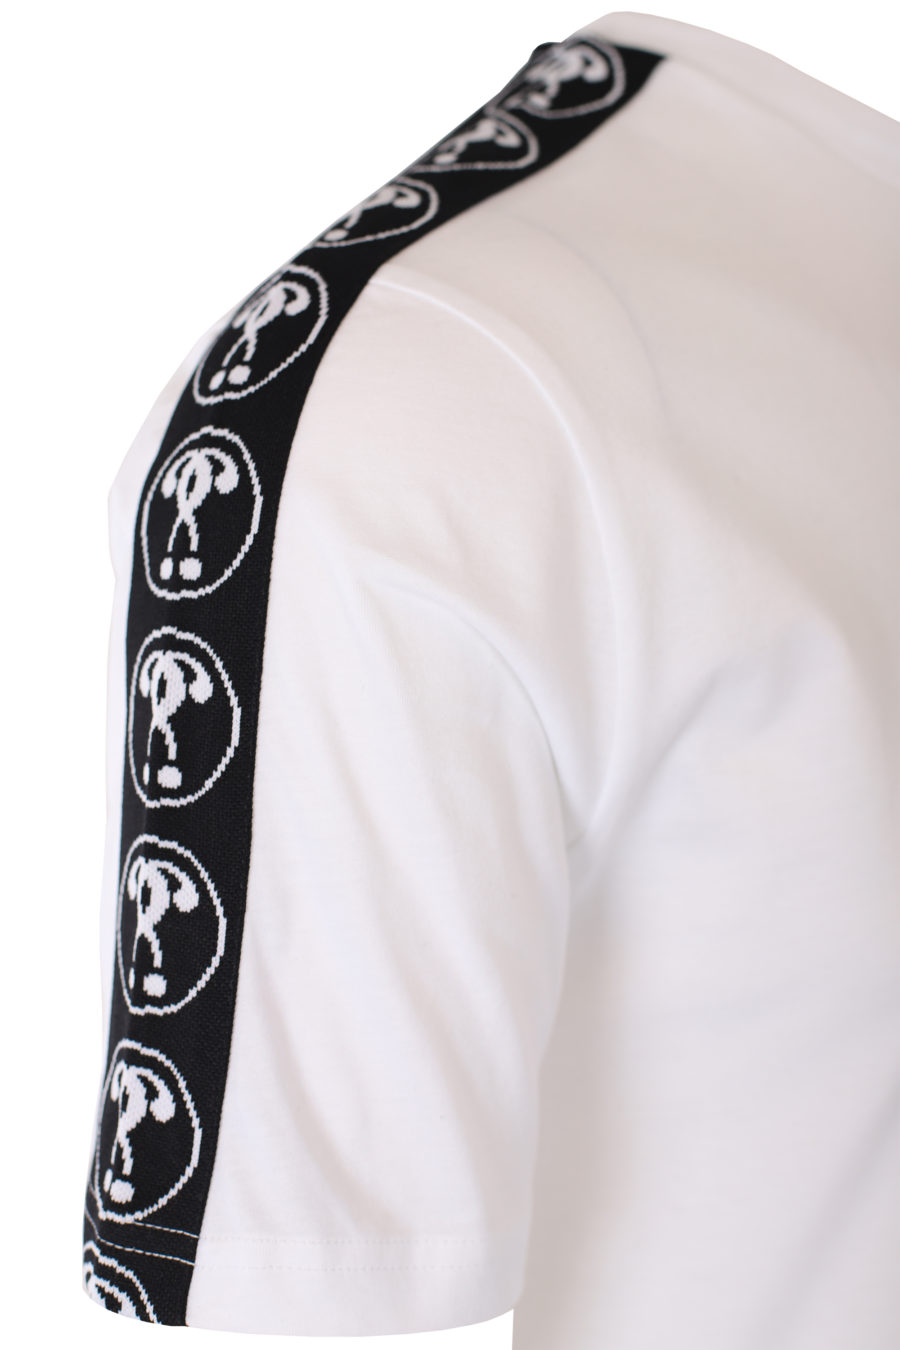 Weißes T-Shirt mit kleinem Doppelfrage-Logo und Band am Ärmel - IMG 9332